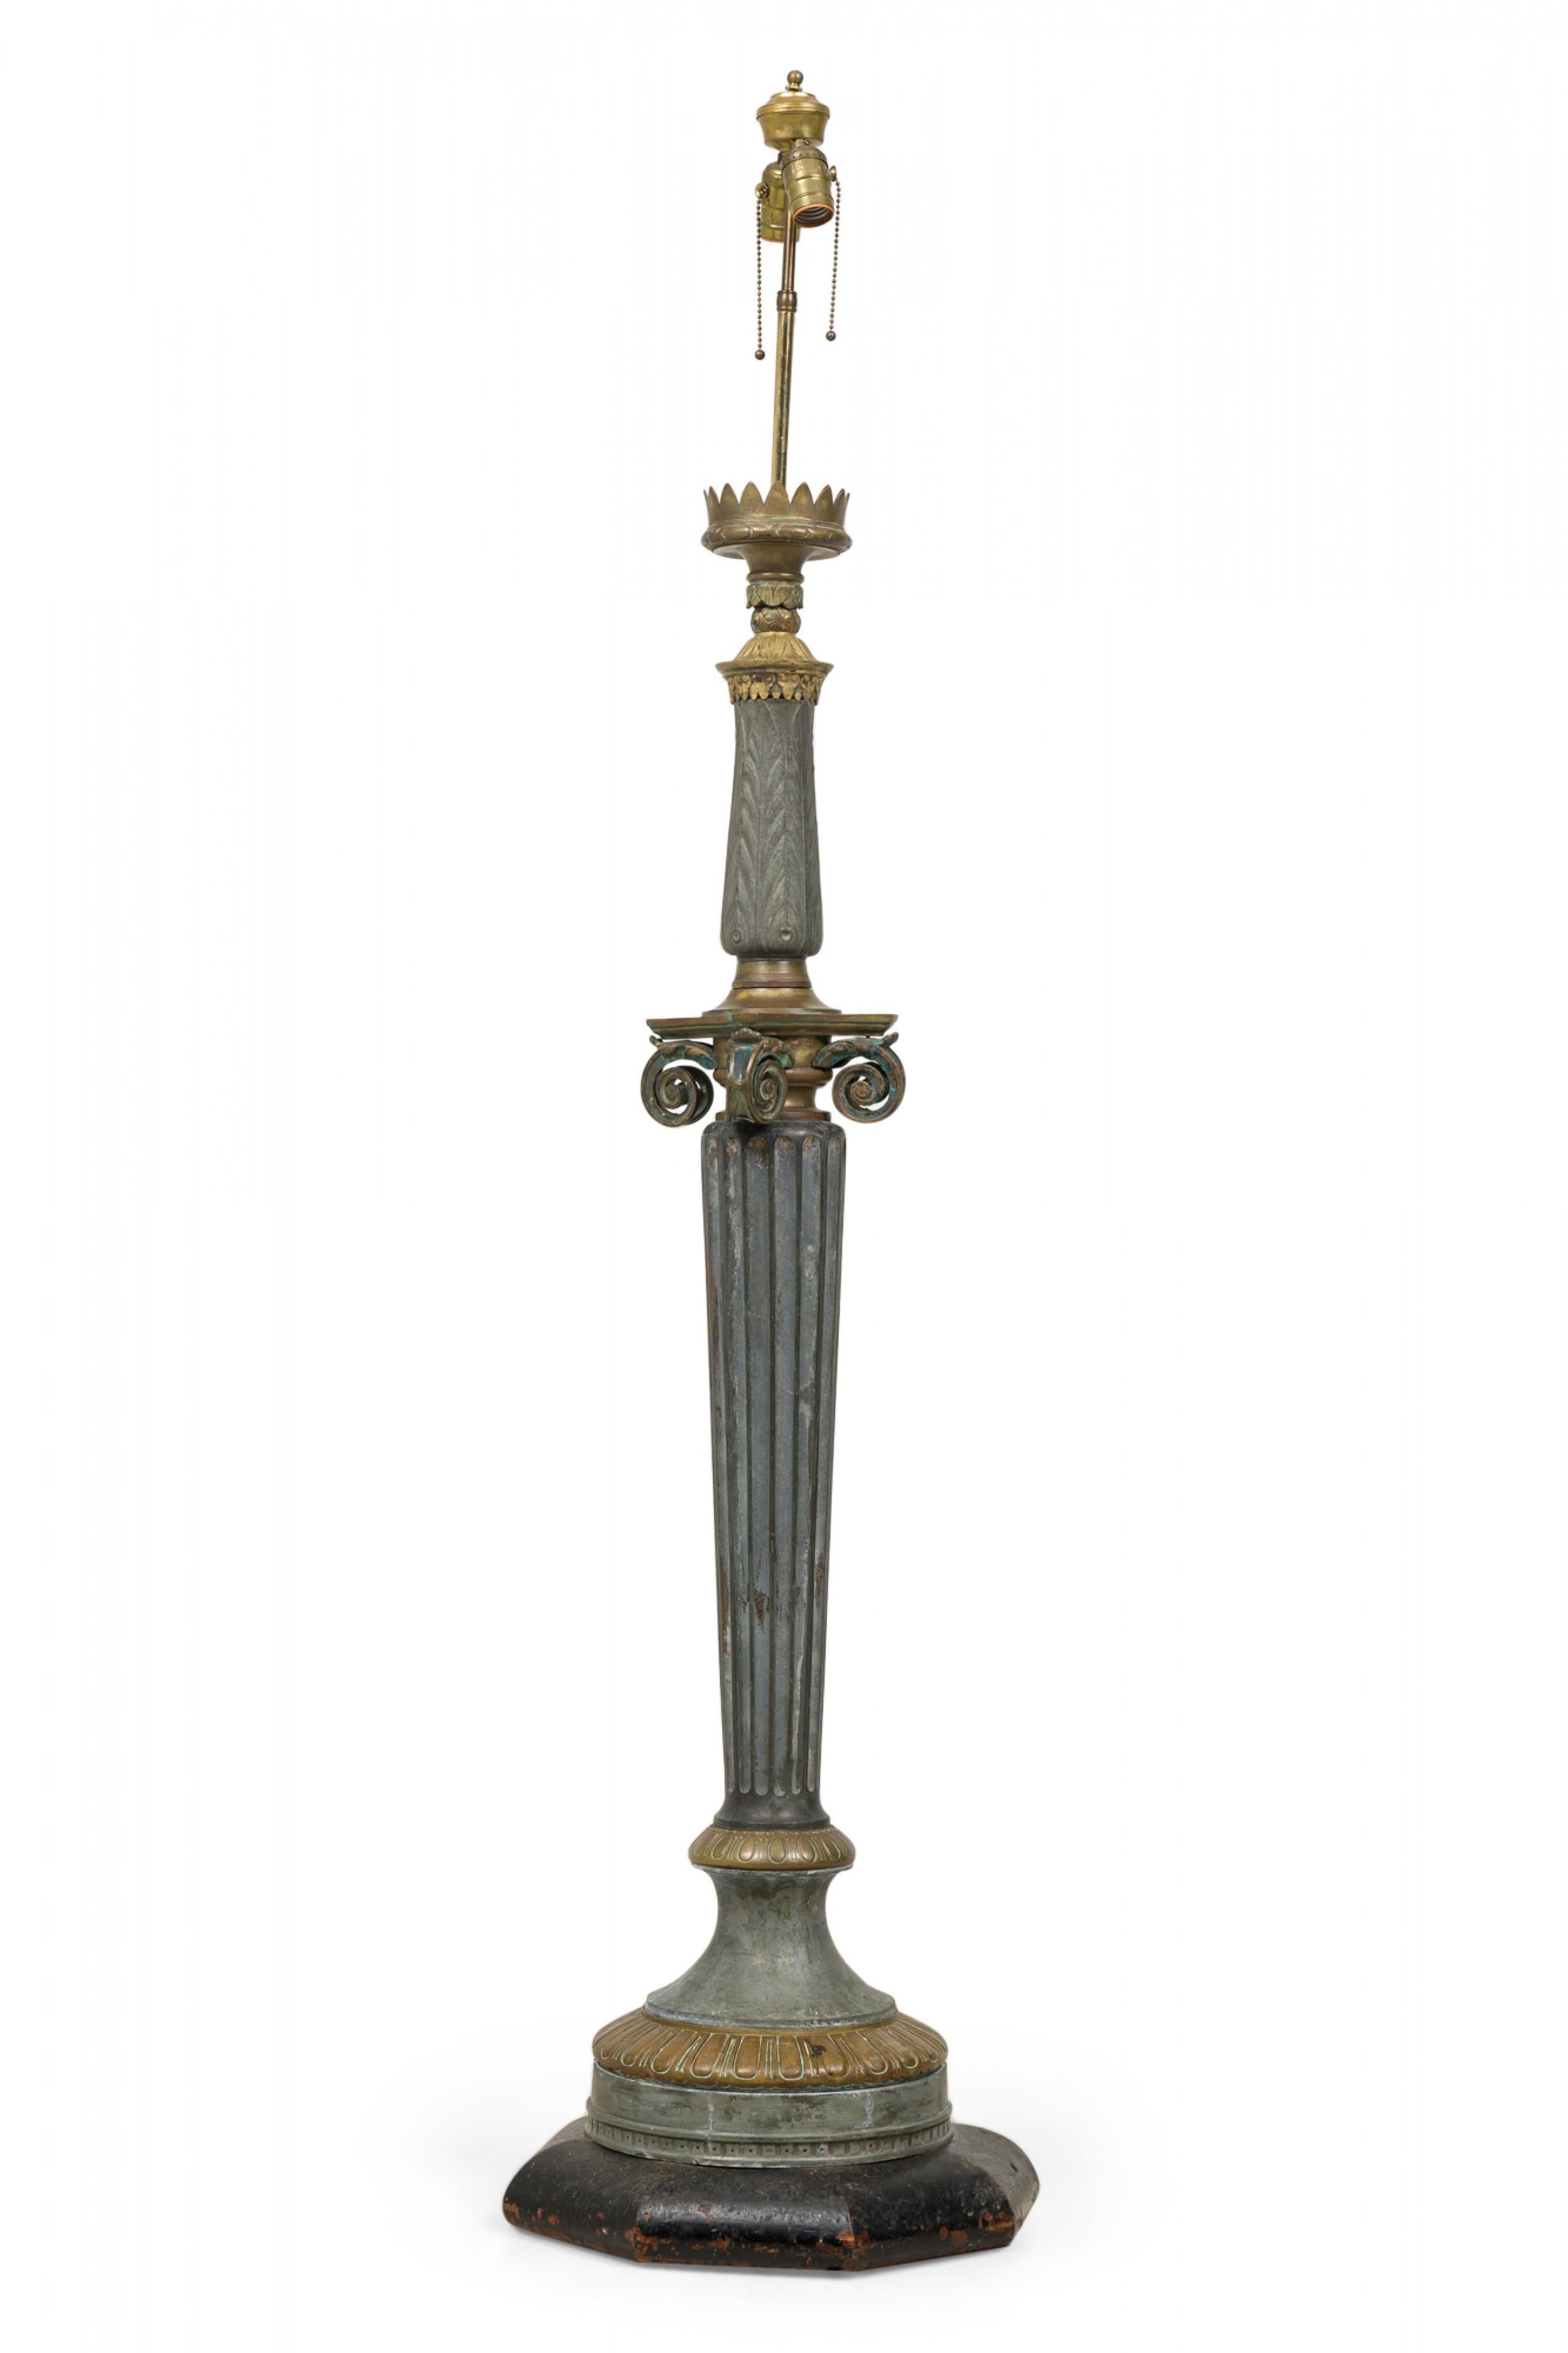 Stehlampe im französischen Empire-Stil mit ionischer Säulenform, gefertigt aus Aluminium und Messing mit starker Patina, montiert mit einer zweiflammigen Messingleuchte und einem schwarz lackierten Holzsockel.